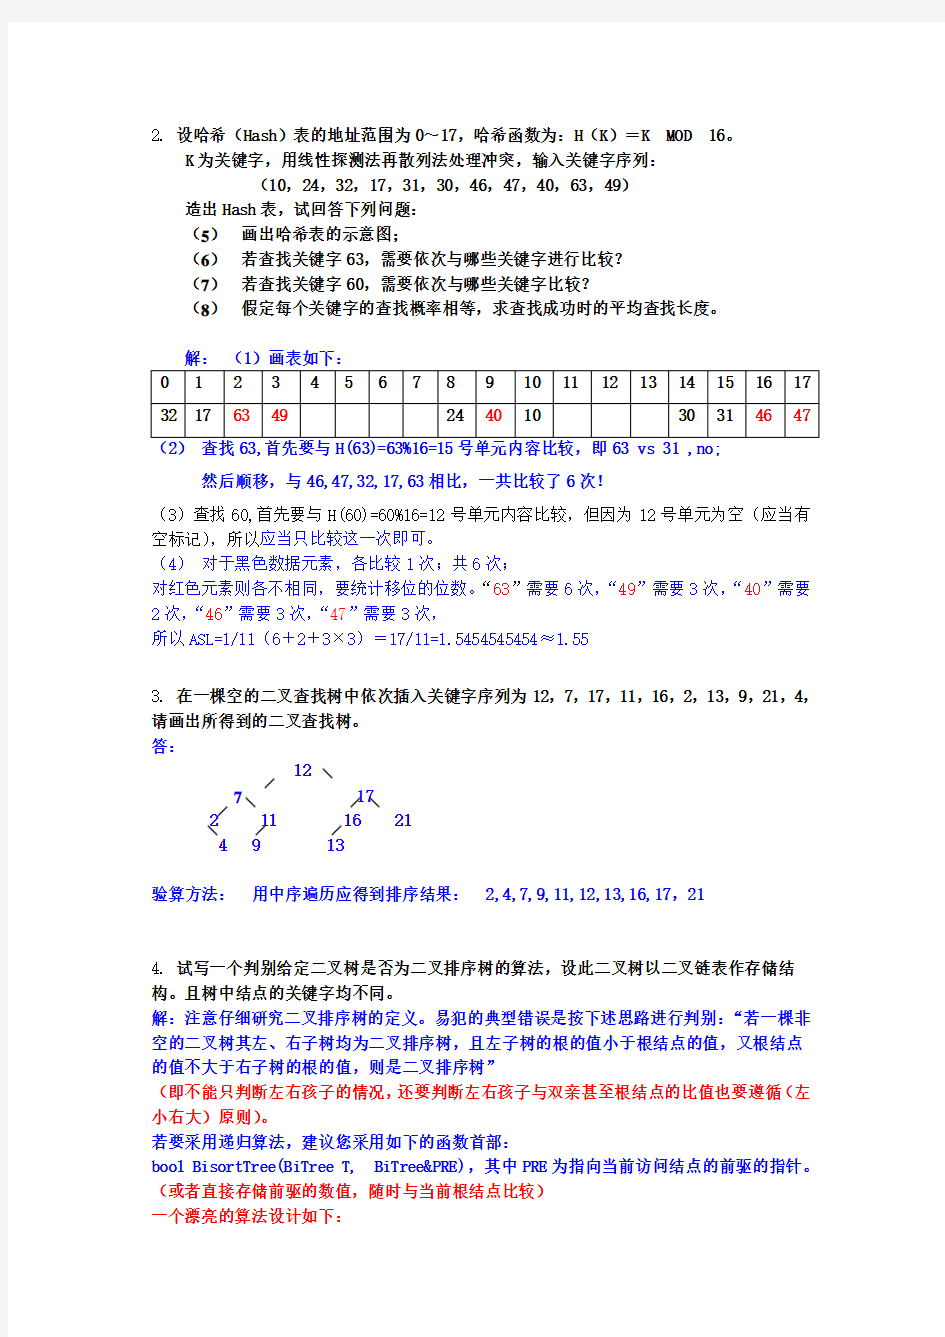 南京工业大学 数据结构 作业答案 作业6